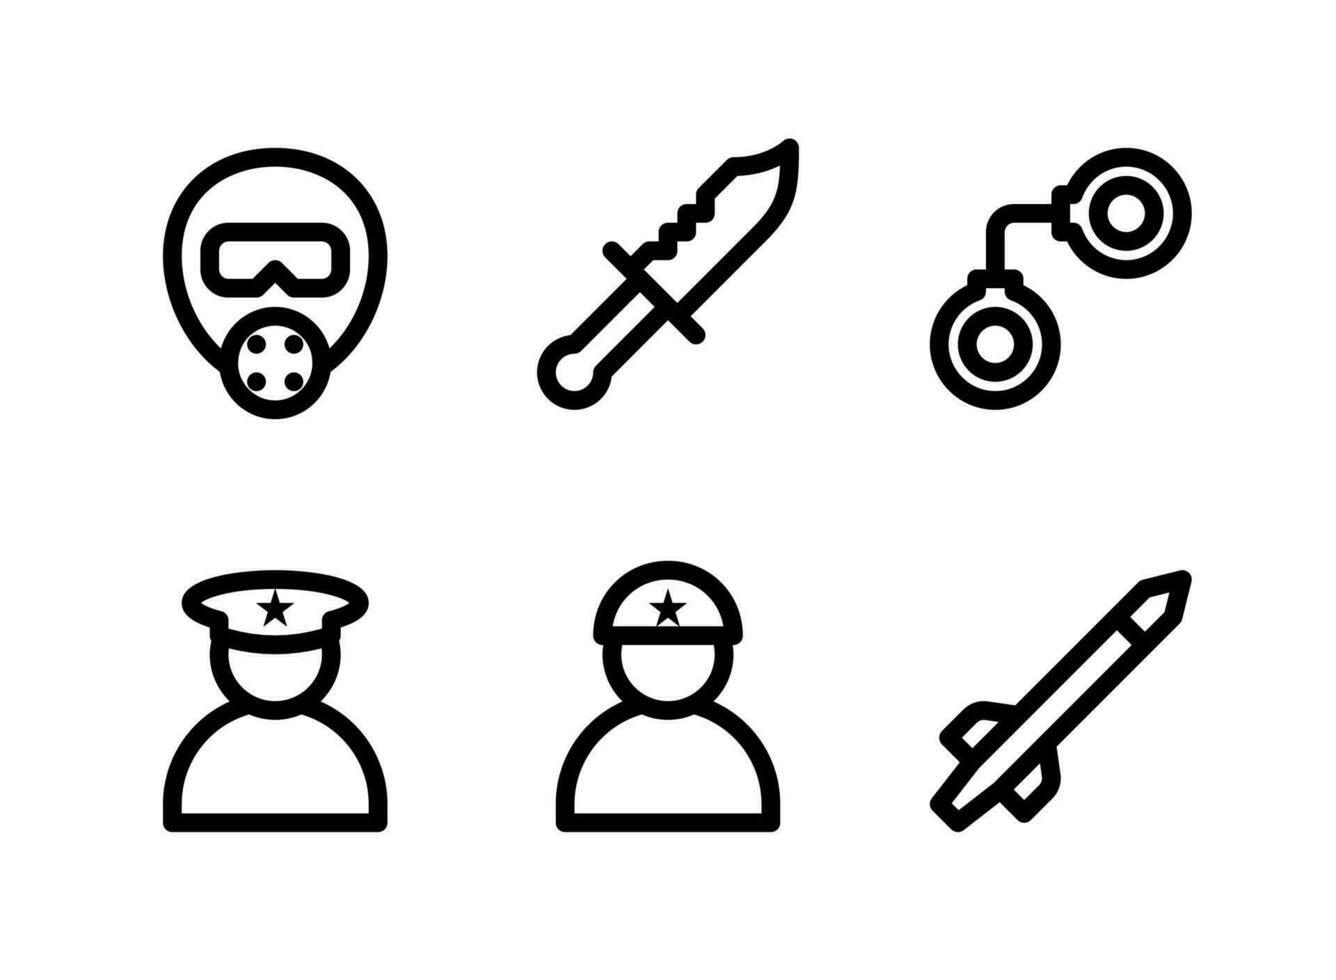 semplice set di icone di linea del vettore relative militari. contiene icone come maschera antigas, coltello, manette, soldato e altro ancora.